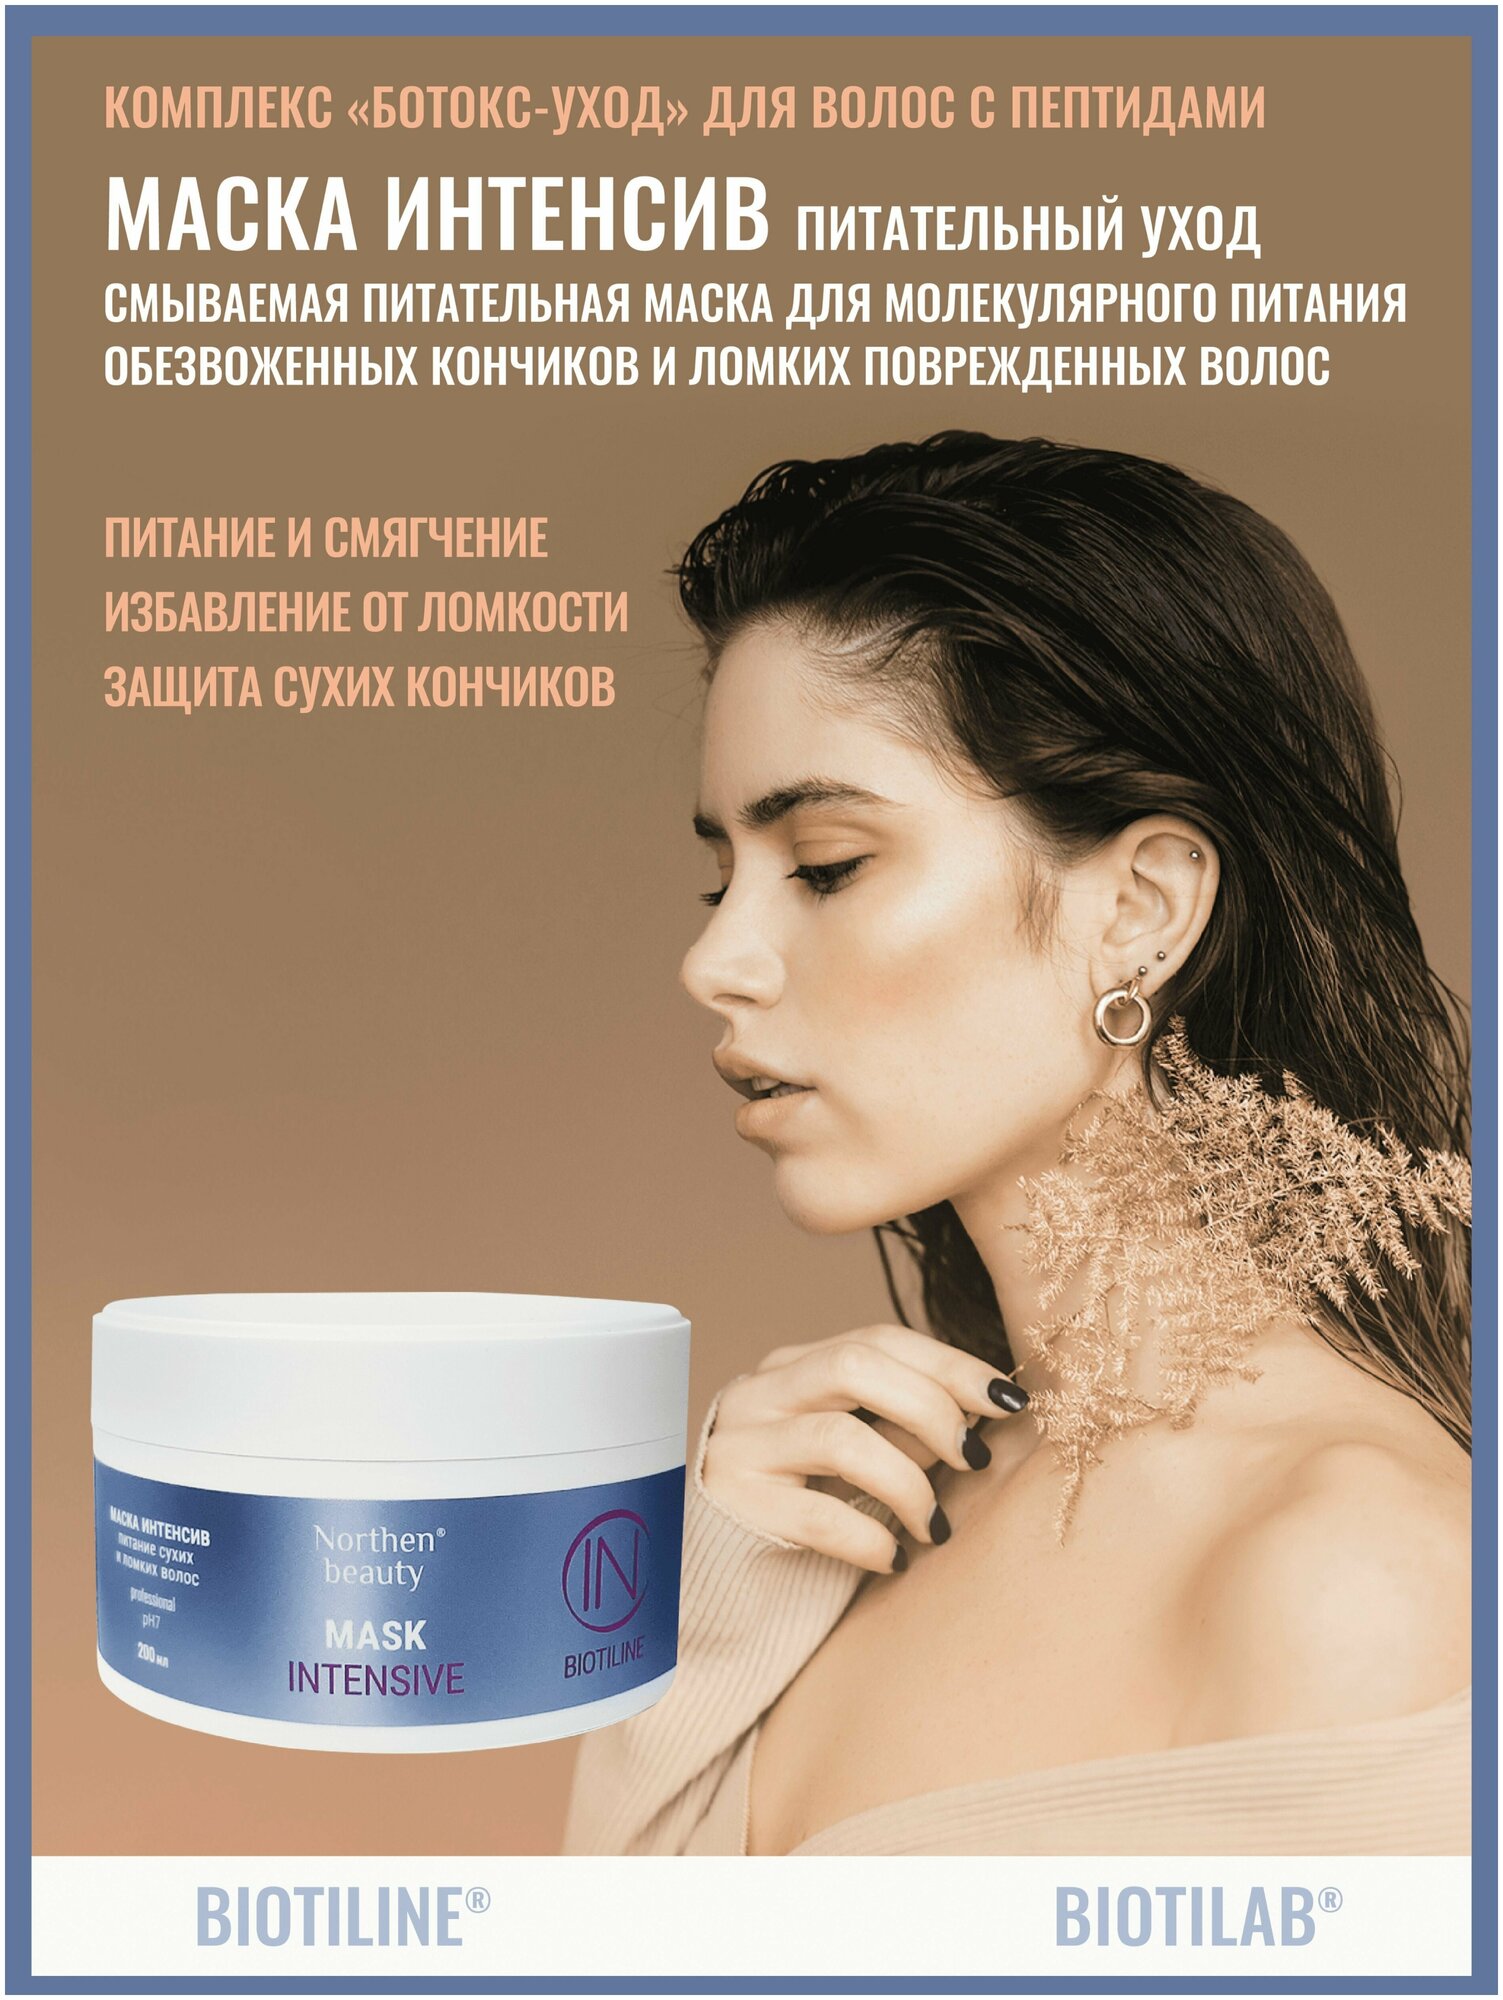 Кератиновая маска Intensive для сухих и ломких волос женская увлажняющая защитная витаминизированная укрепляющая профессиональная питательная